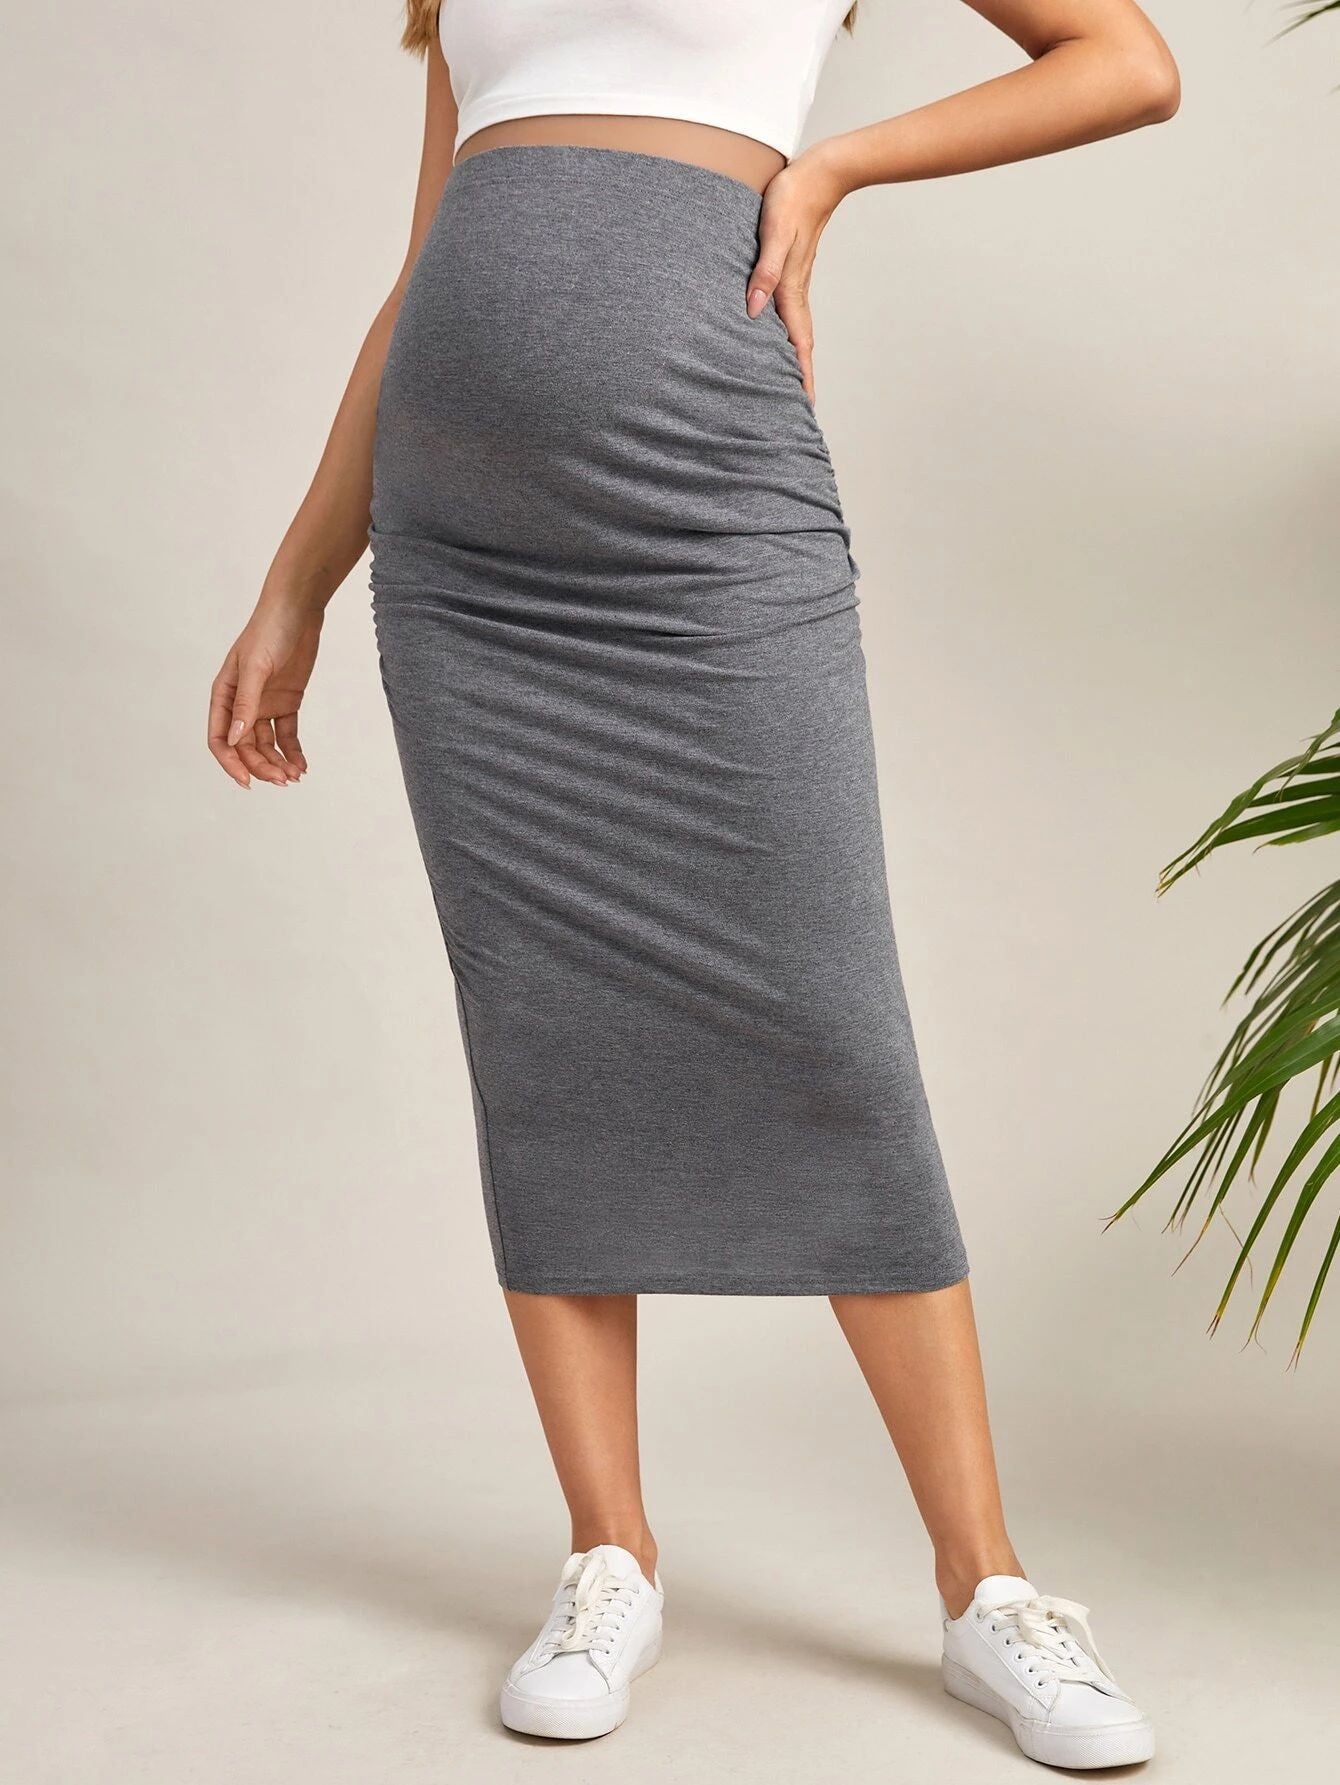 Maternity - Women's High Waist Hip Skirt For Pregnant Women